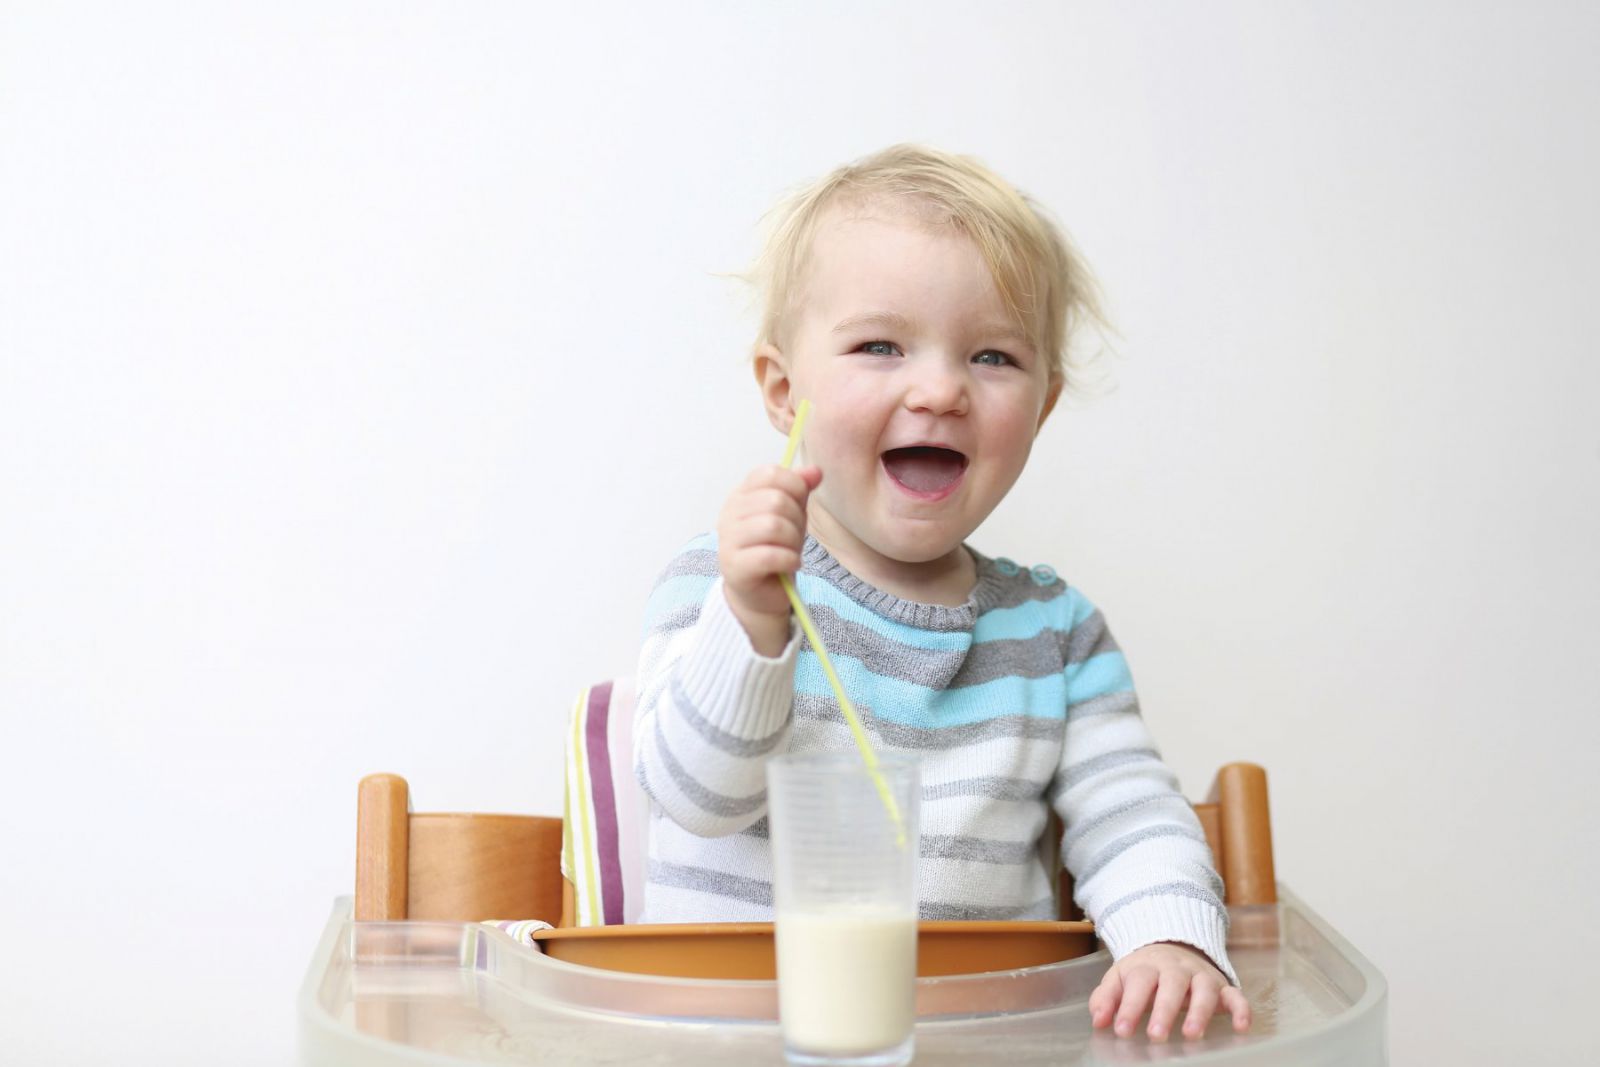 Bổ sung dinh dưỡng cho trẻ biếng ăn như thế nào đúng nhất